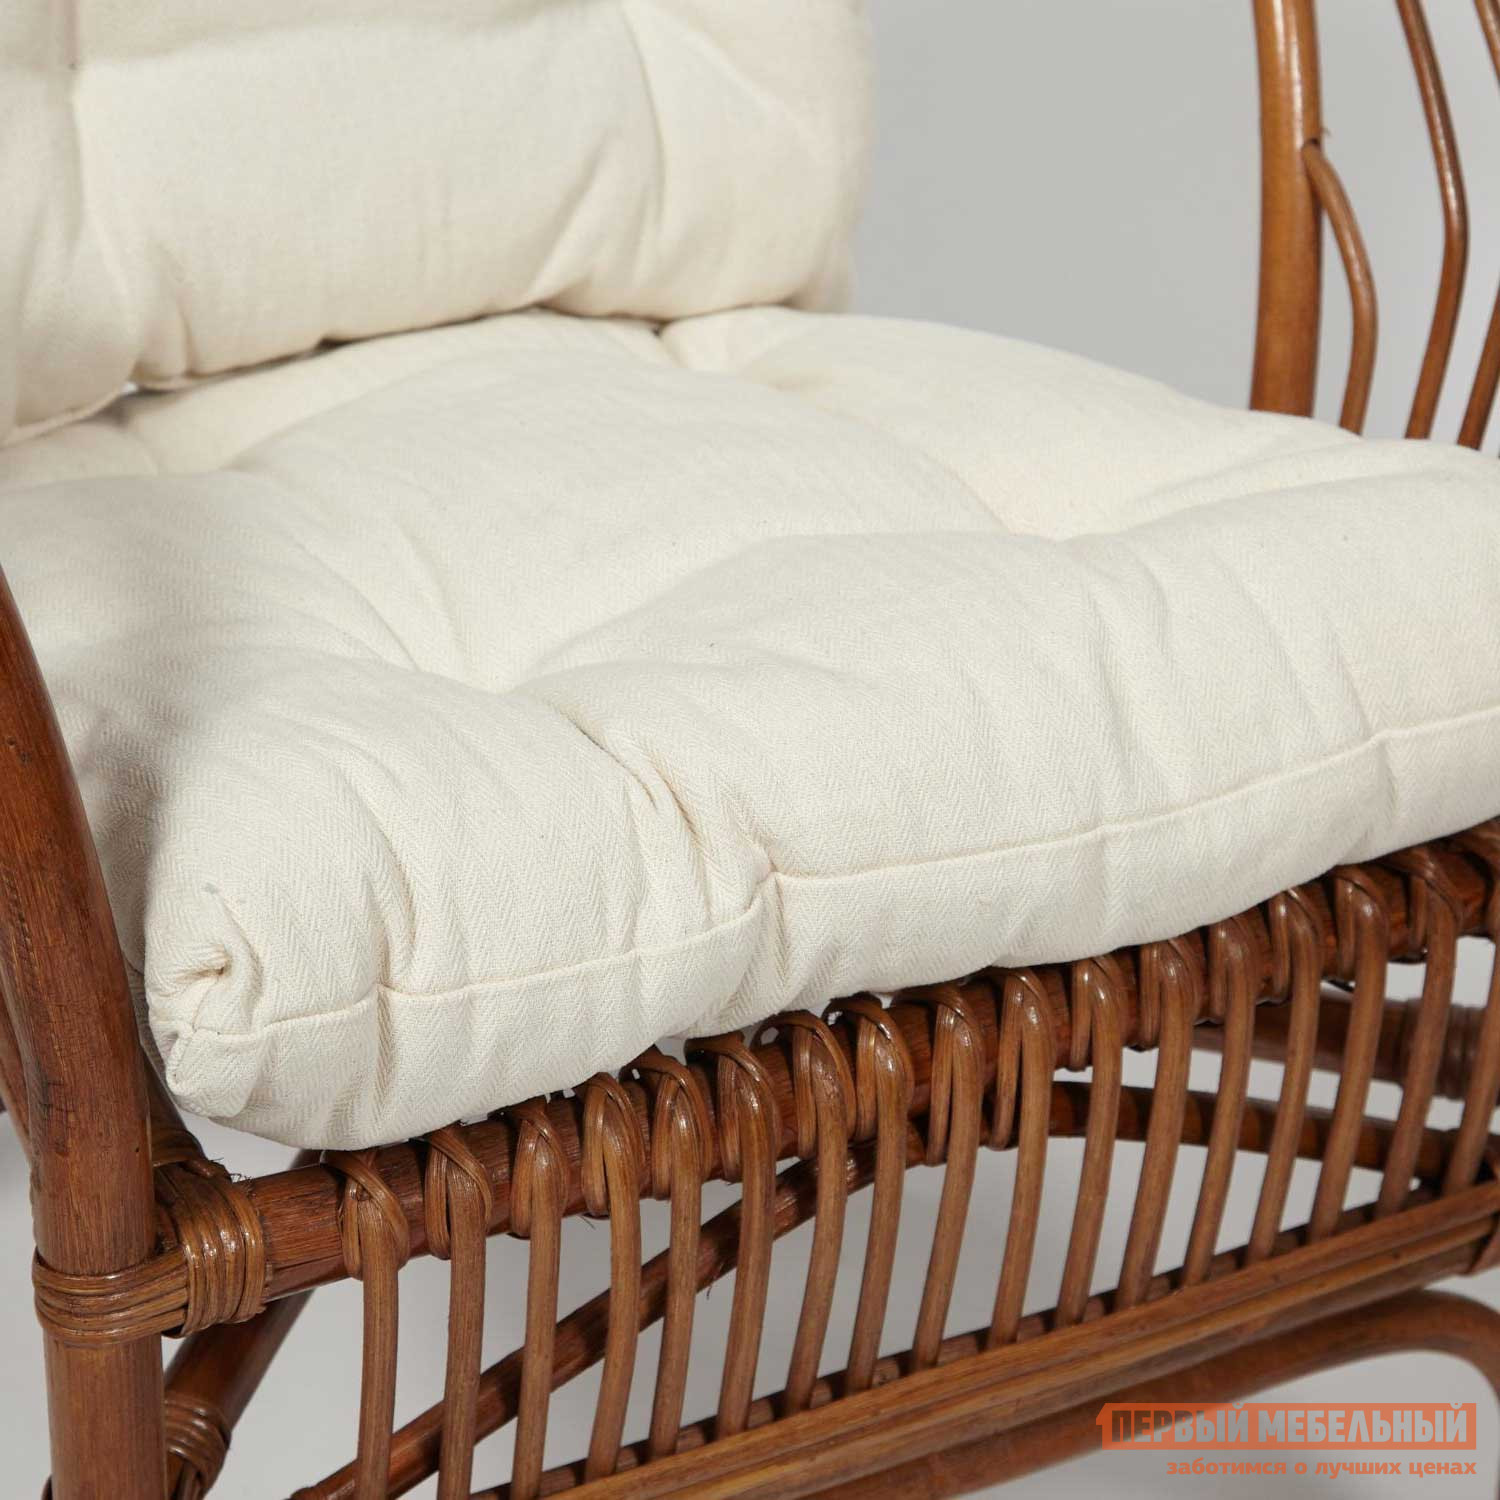 Комплект плетеной мебели  Нью Богота Коричневый кокос, ротанг / Бежевый, ткань от Первый Мебельный